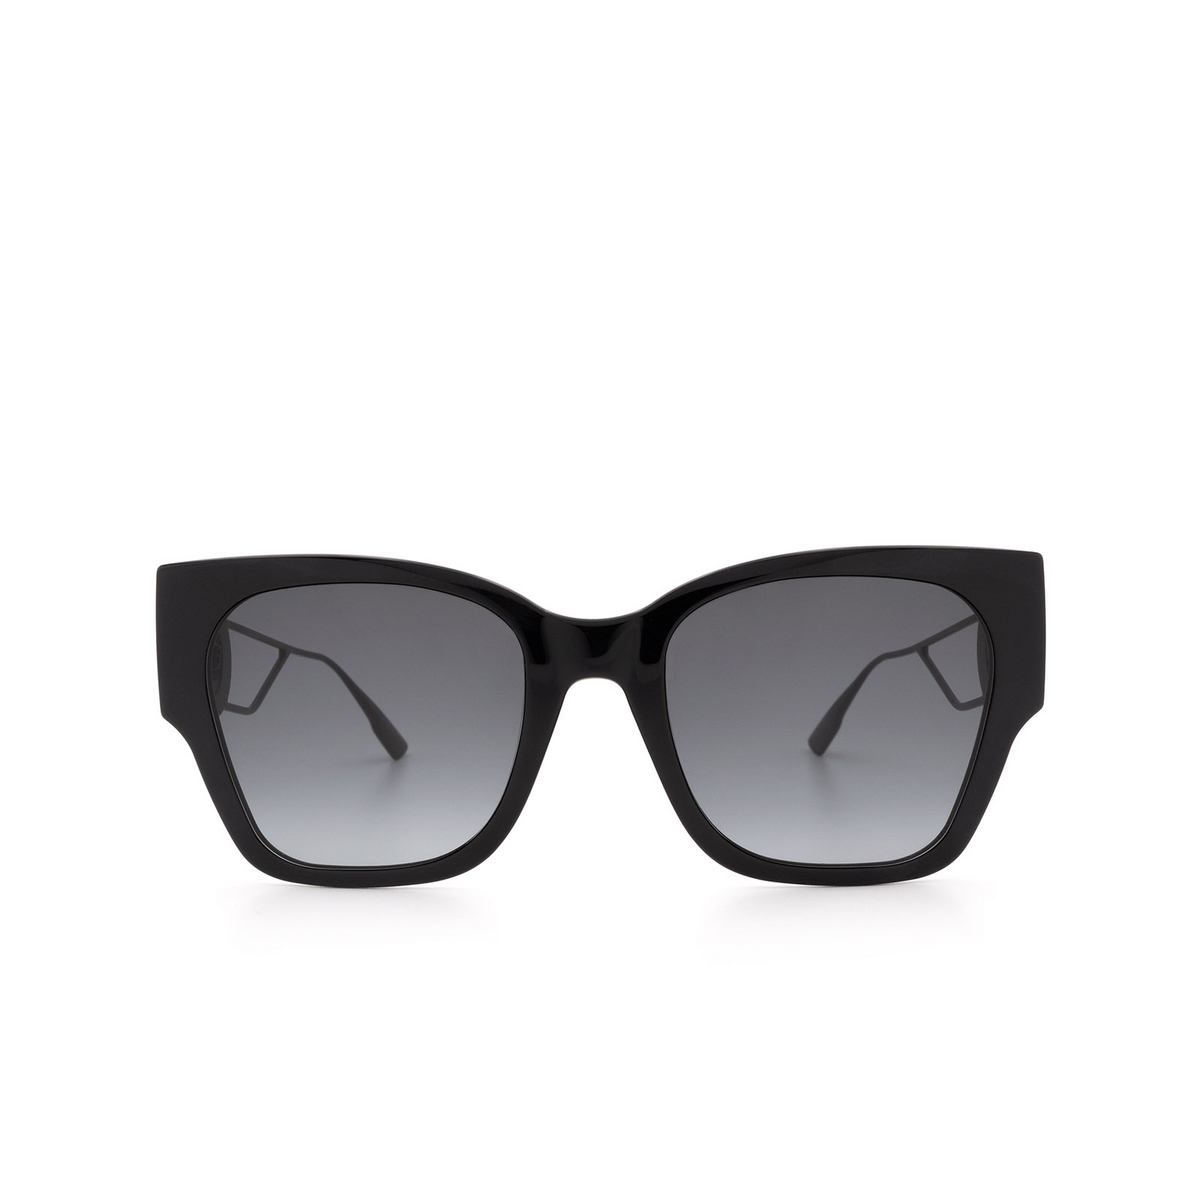 Dior® Square Sunglasses: 30MONTAIGNE1 color Black 807/1I - front view.